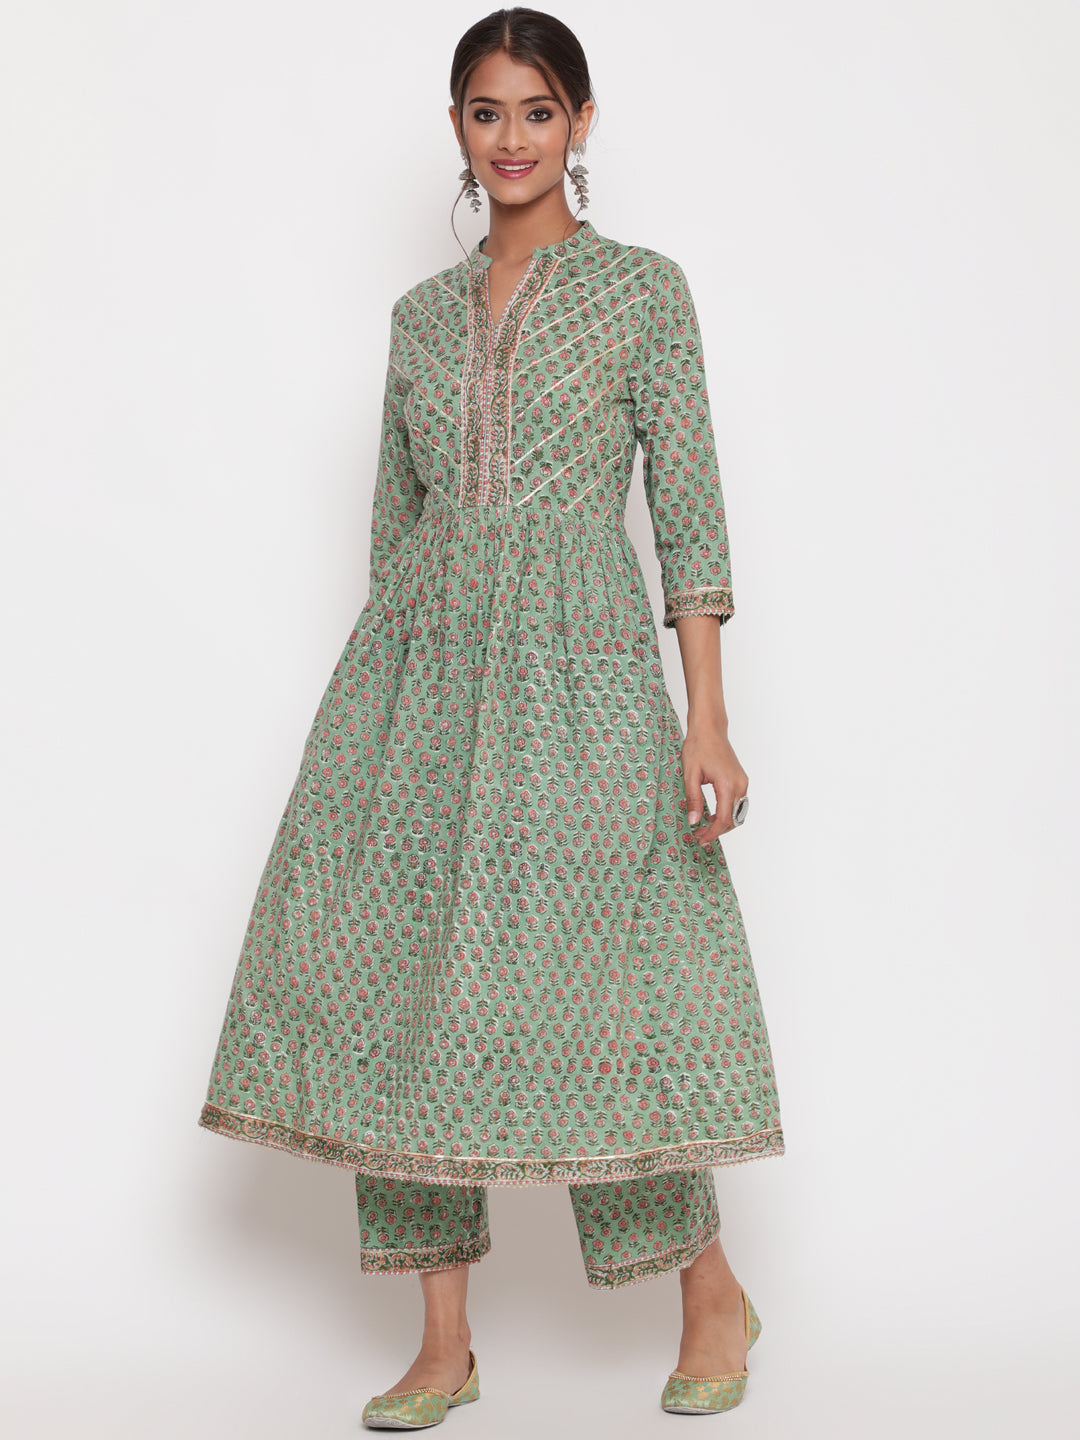 "Woman posing in Savi's Cotton Embellished Sage Green A Line Flared Kurta pant Set